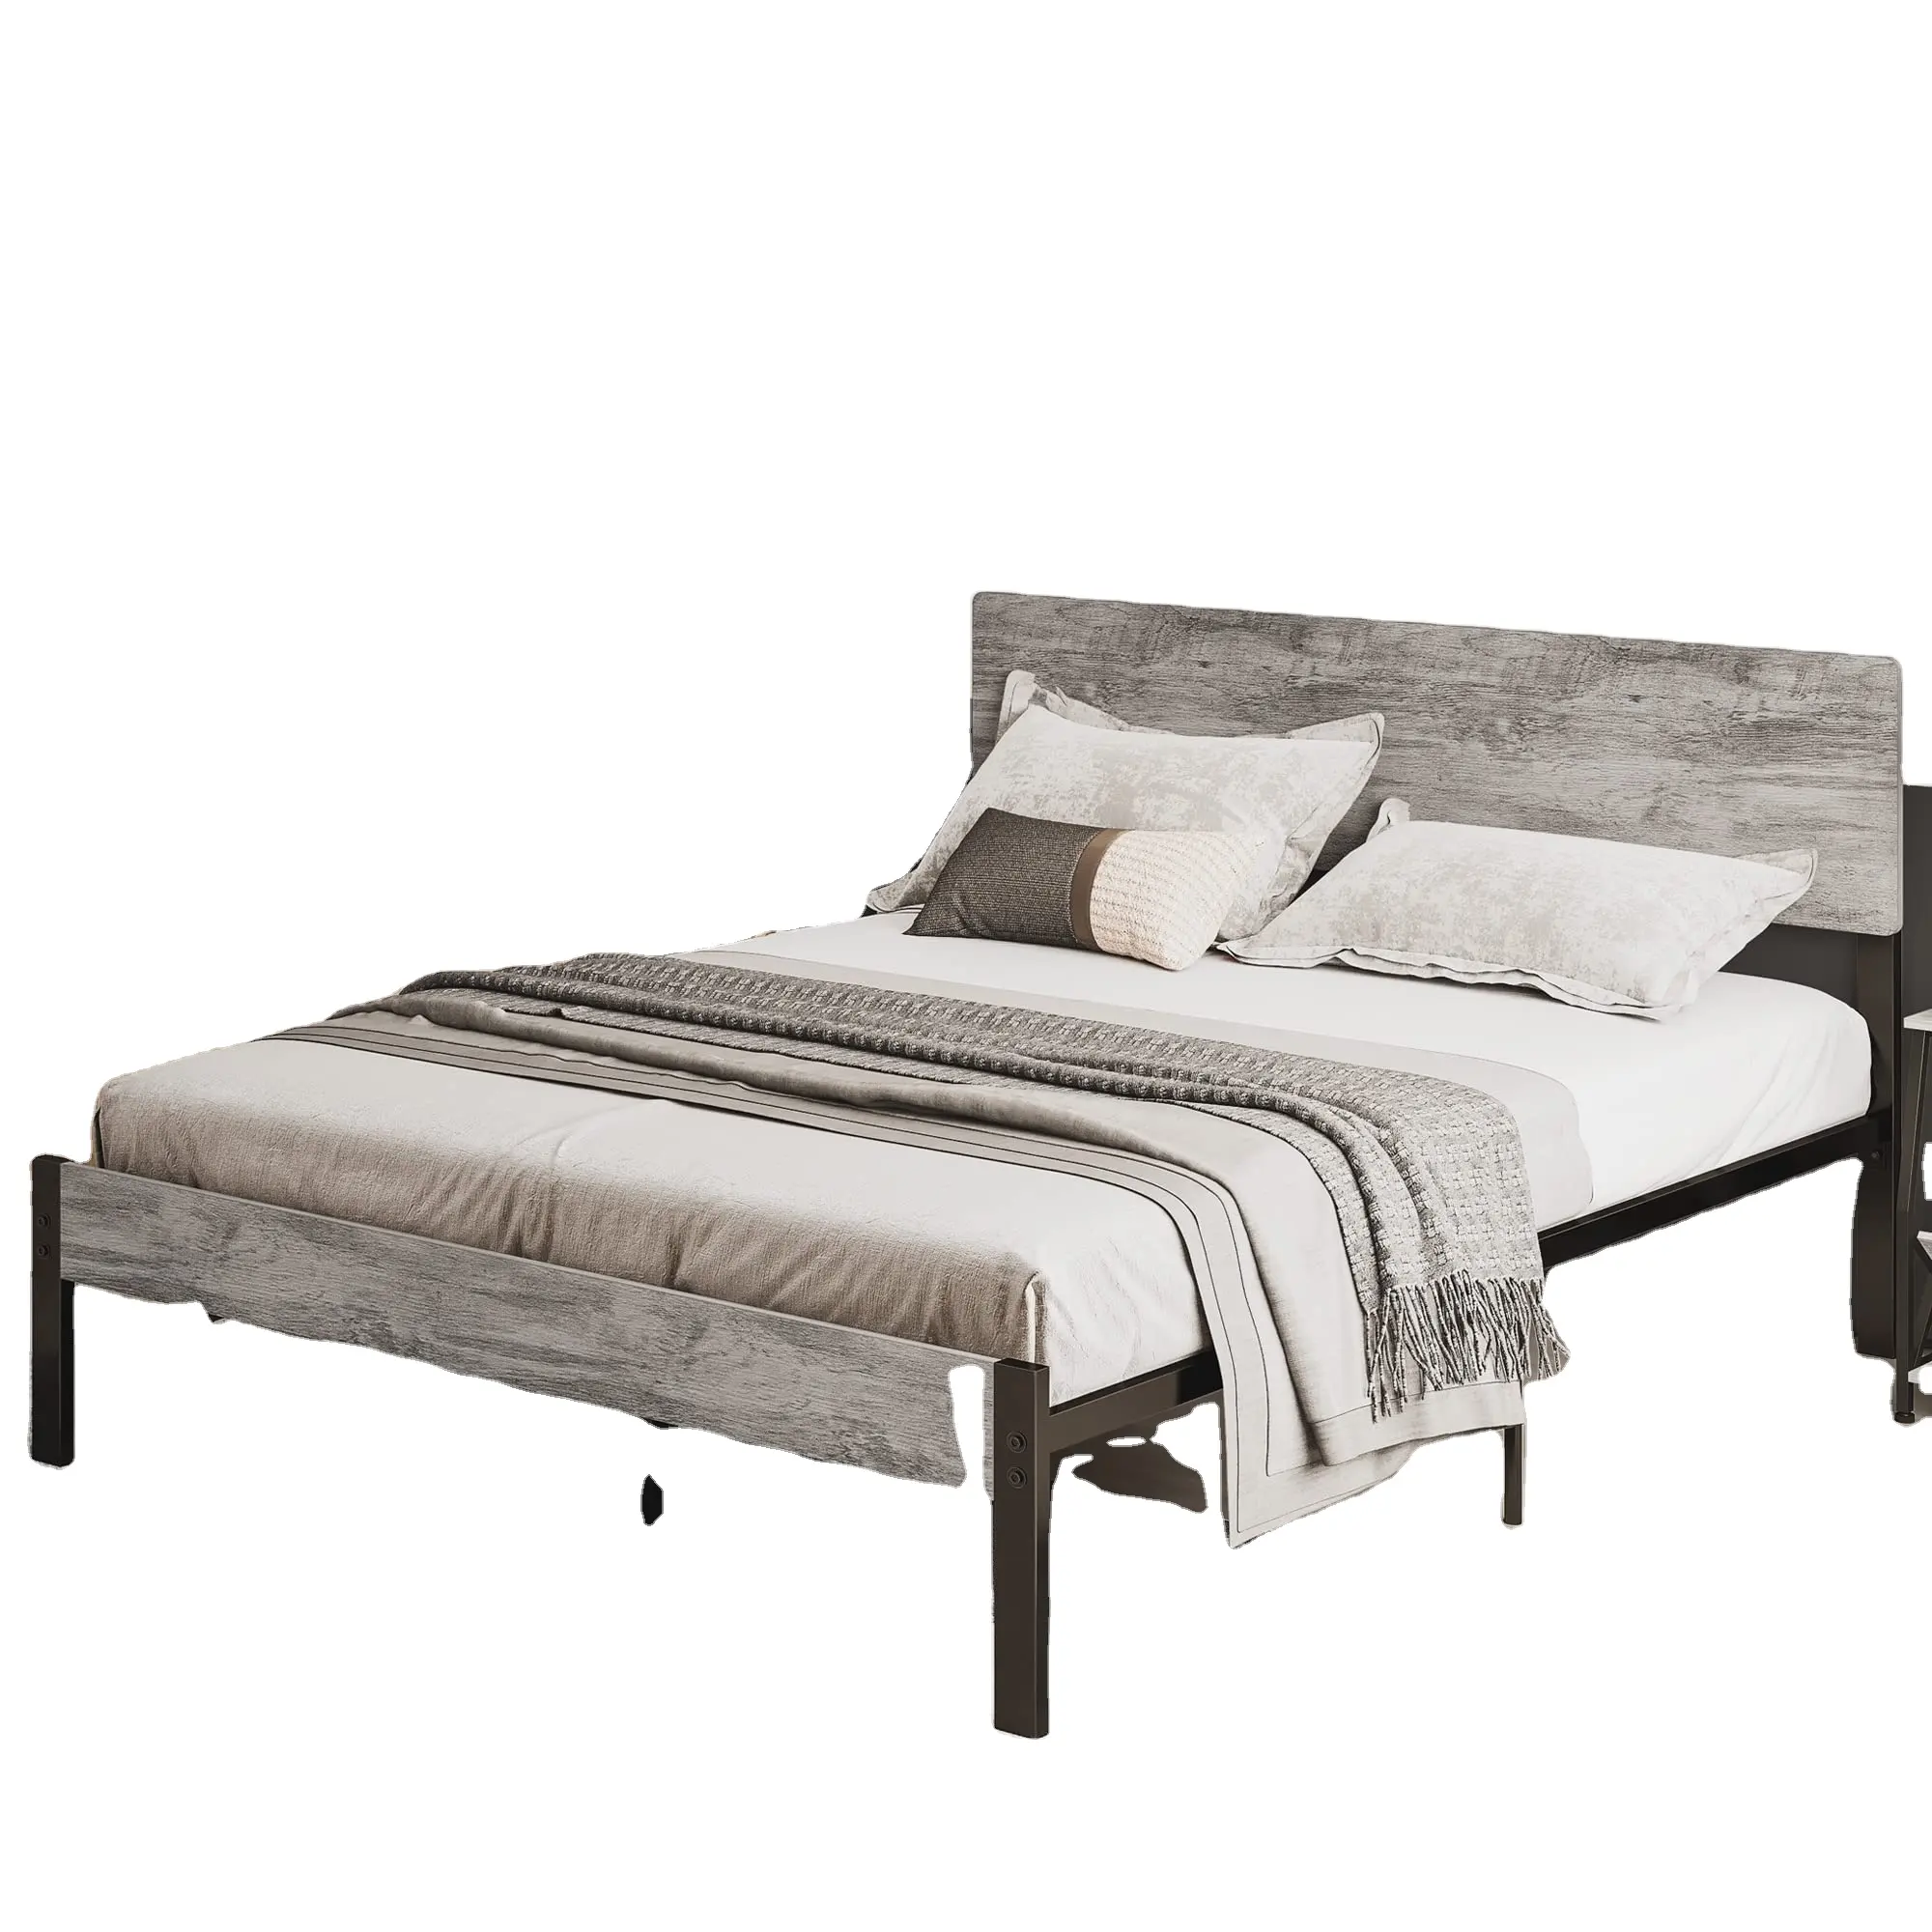 Marco de cama de plataforma de hierro moderno barato de fábrica de diseño de muebles caseros cama de MDF